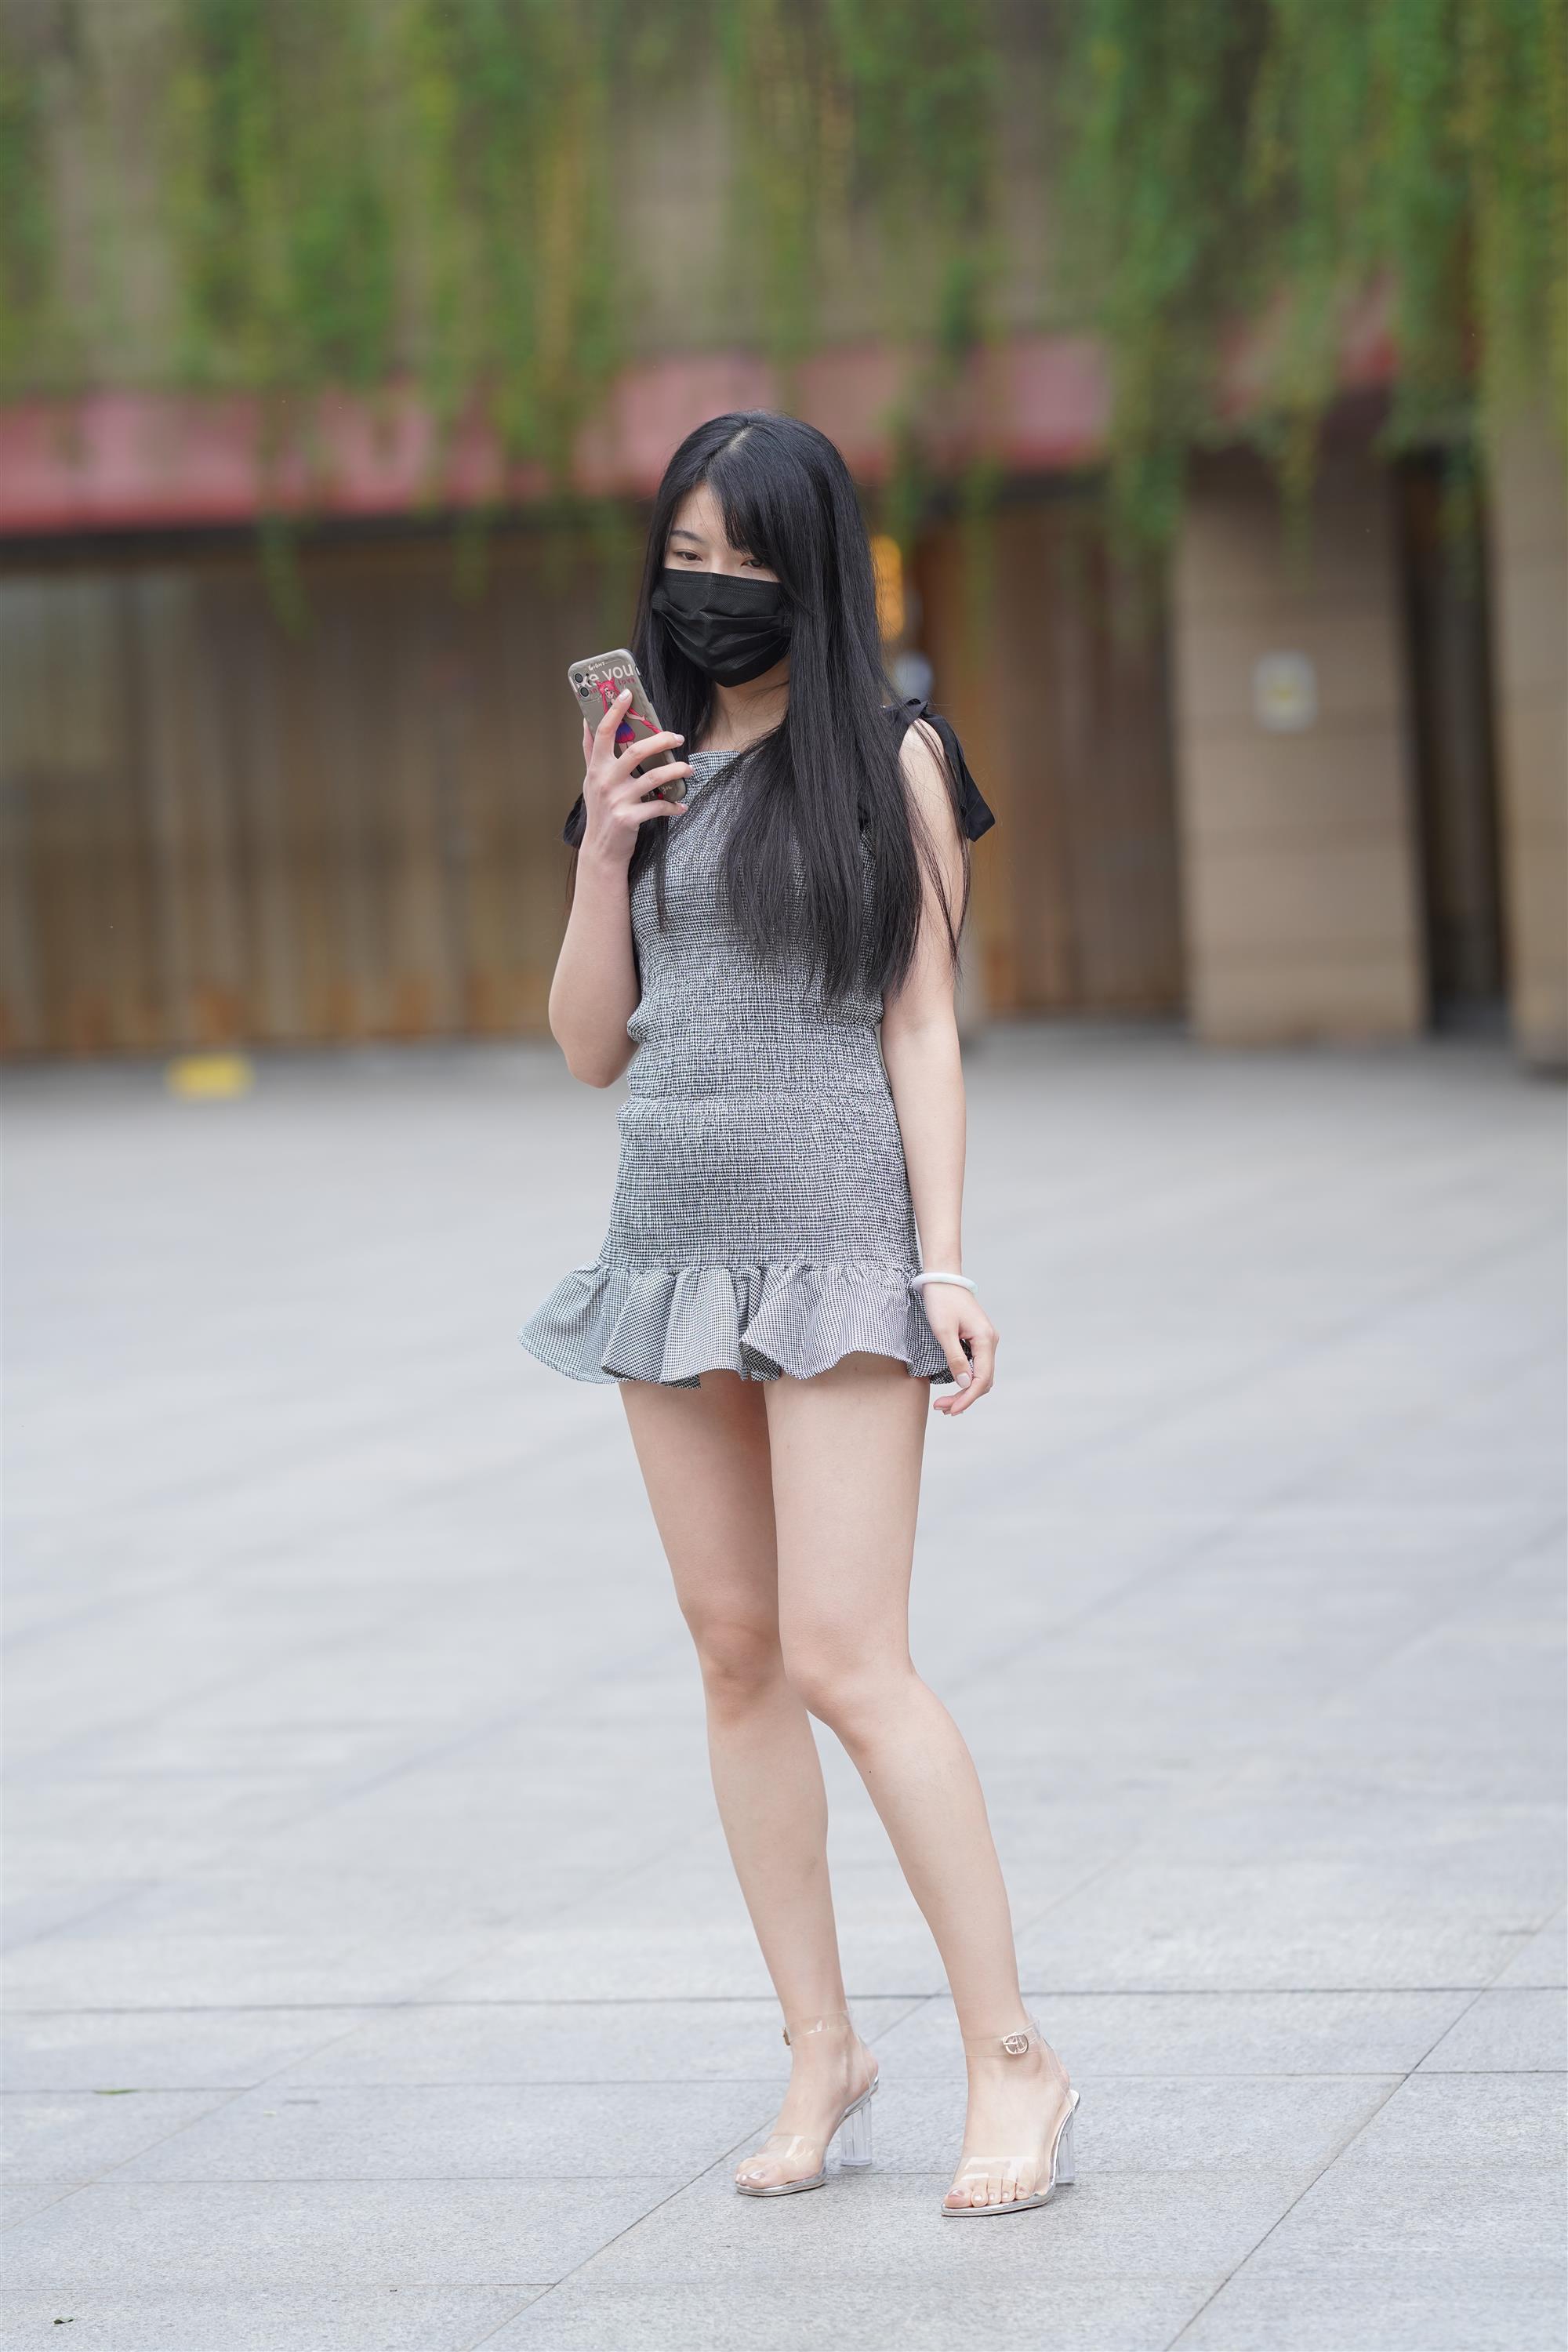 Street Girl In Short Skirt - 269.jpg